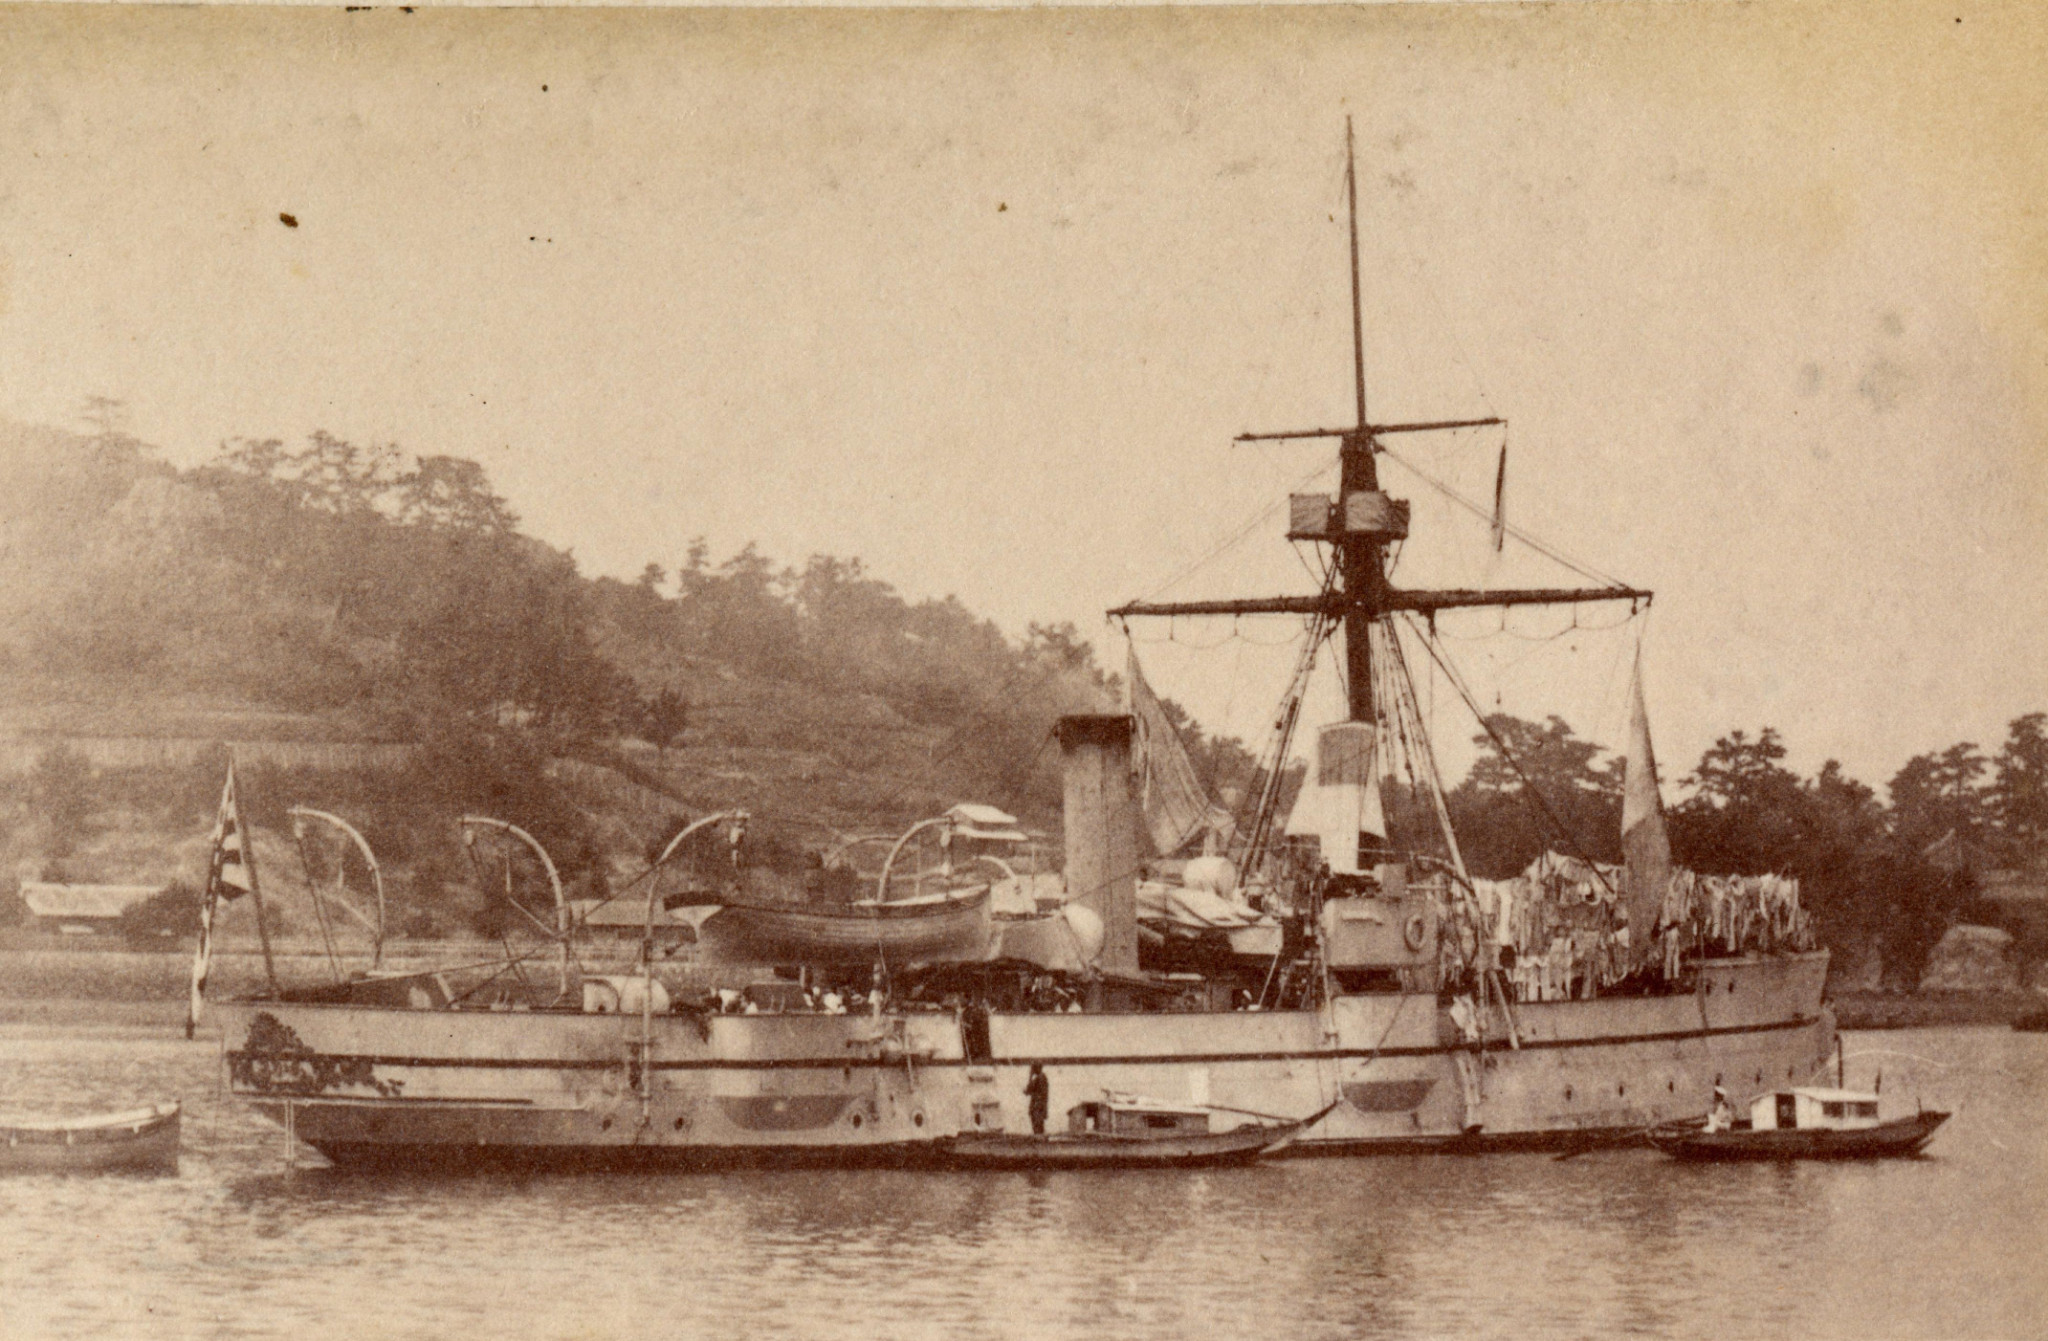 Prawdopodobnie zdjęcie wykonano po bitwie u ujścia Yalu, podczas której okręt utracił maszt.